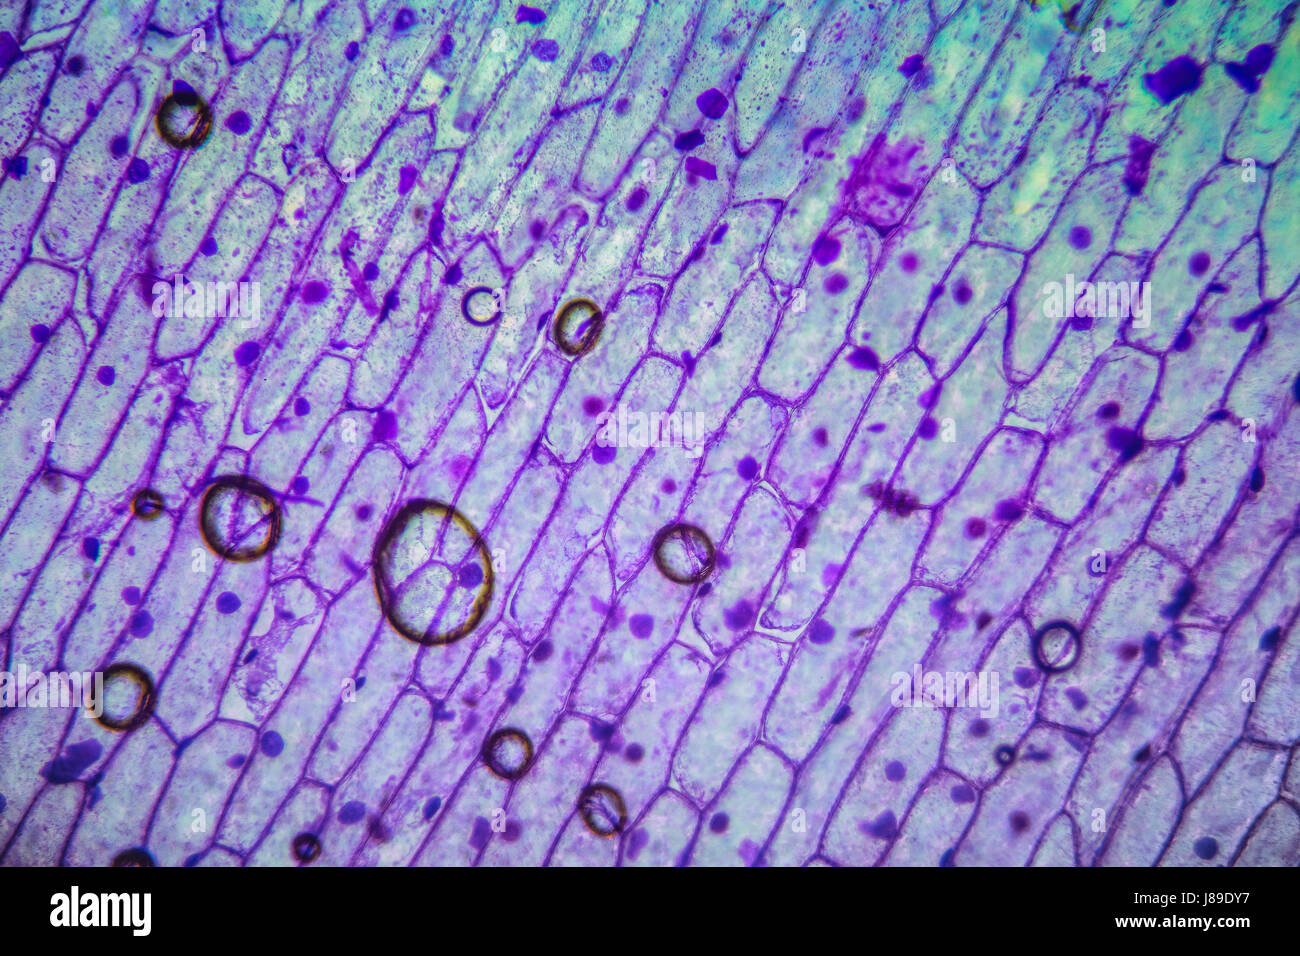 En vertu de l'article organique microscope. Texture microscopique colorée, l'arrière-plan, le motif. Banque D'Images